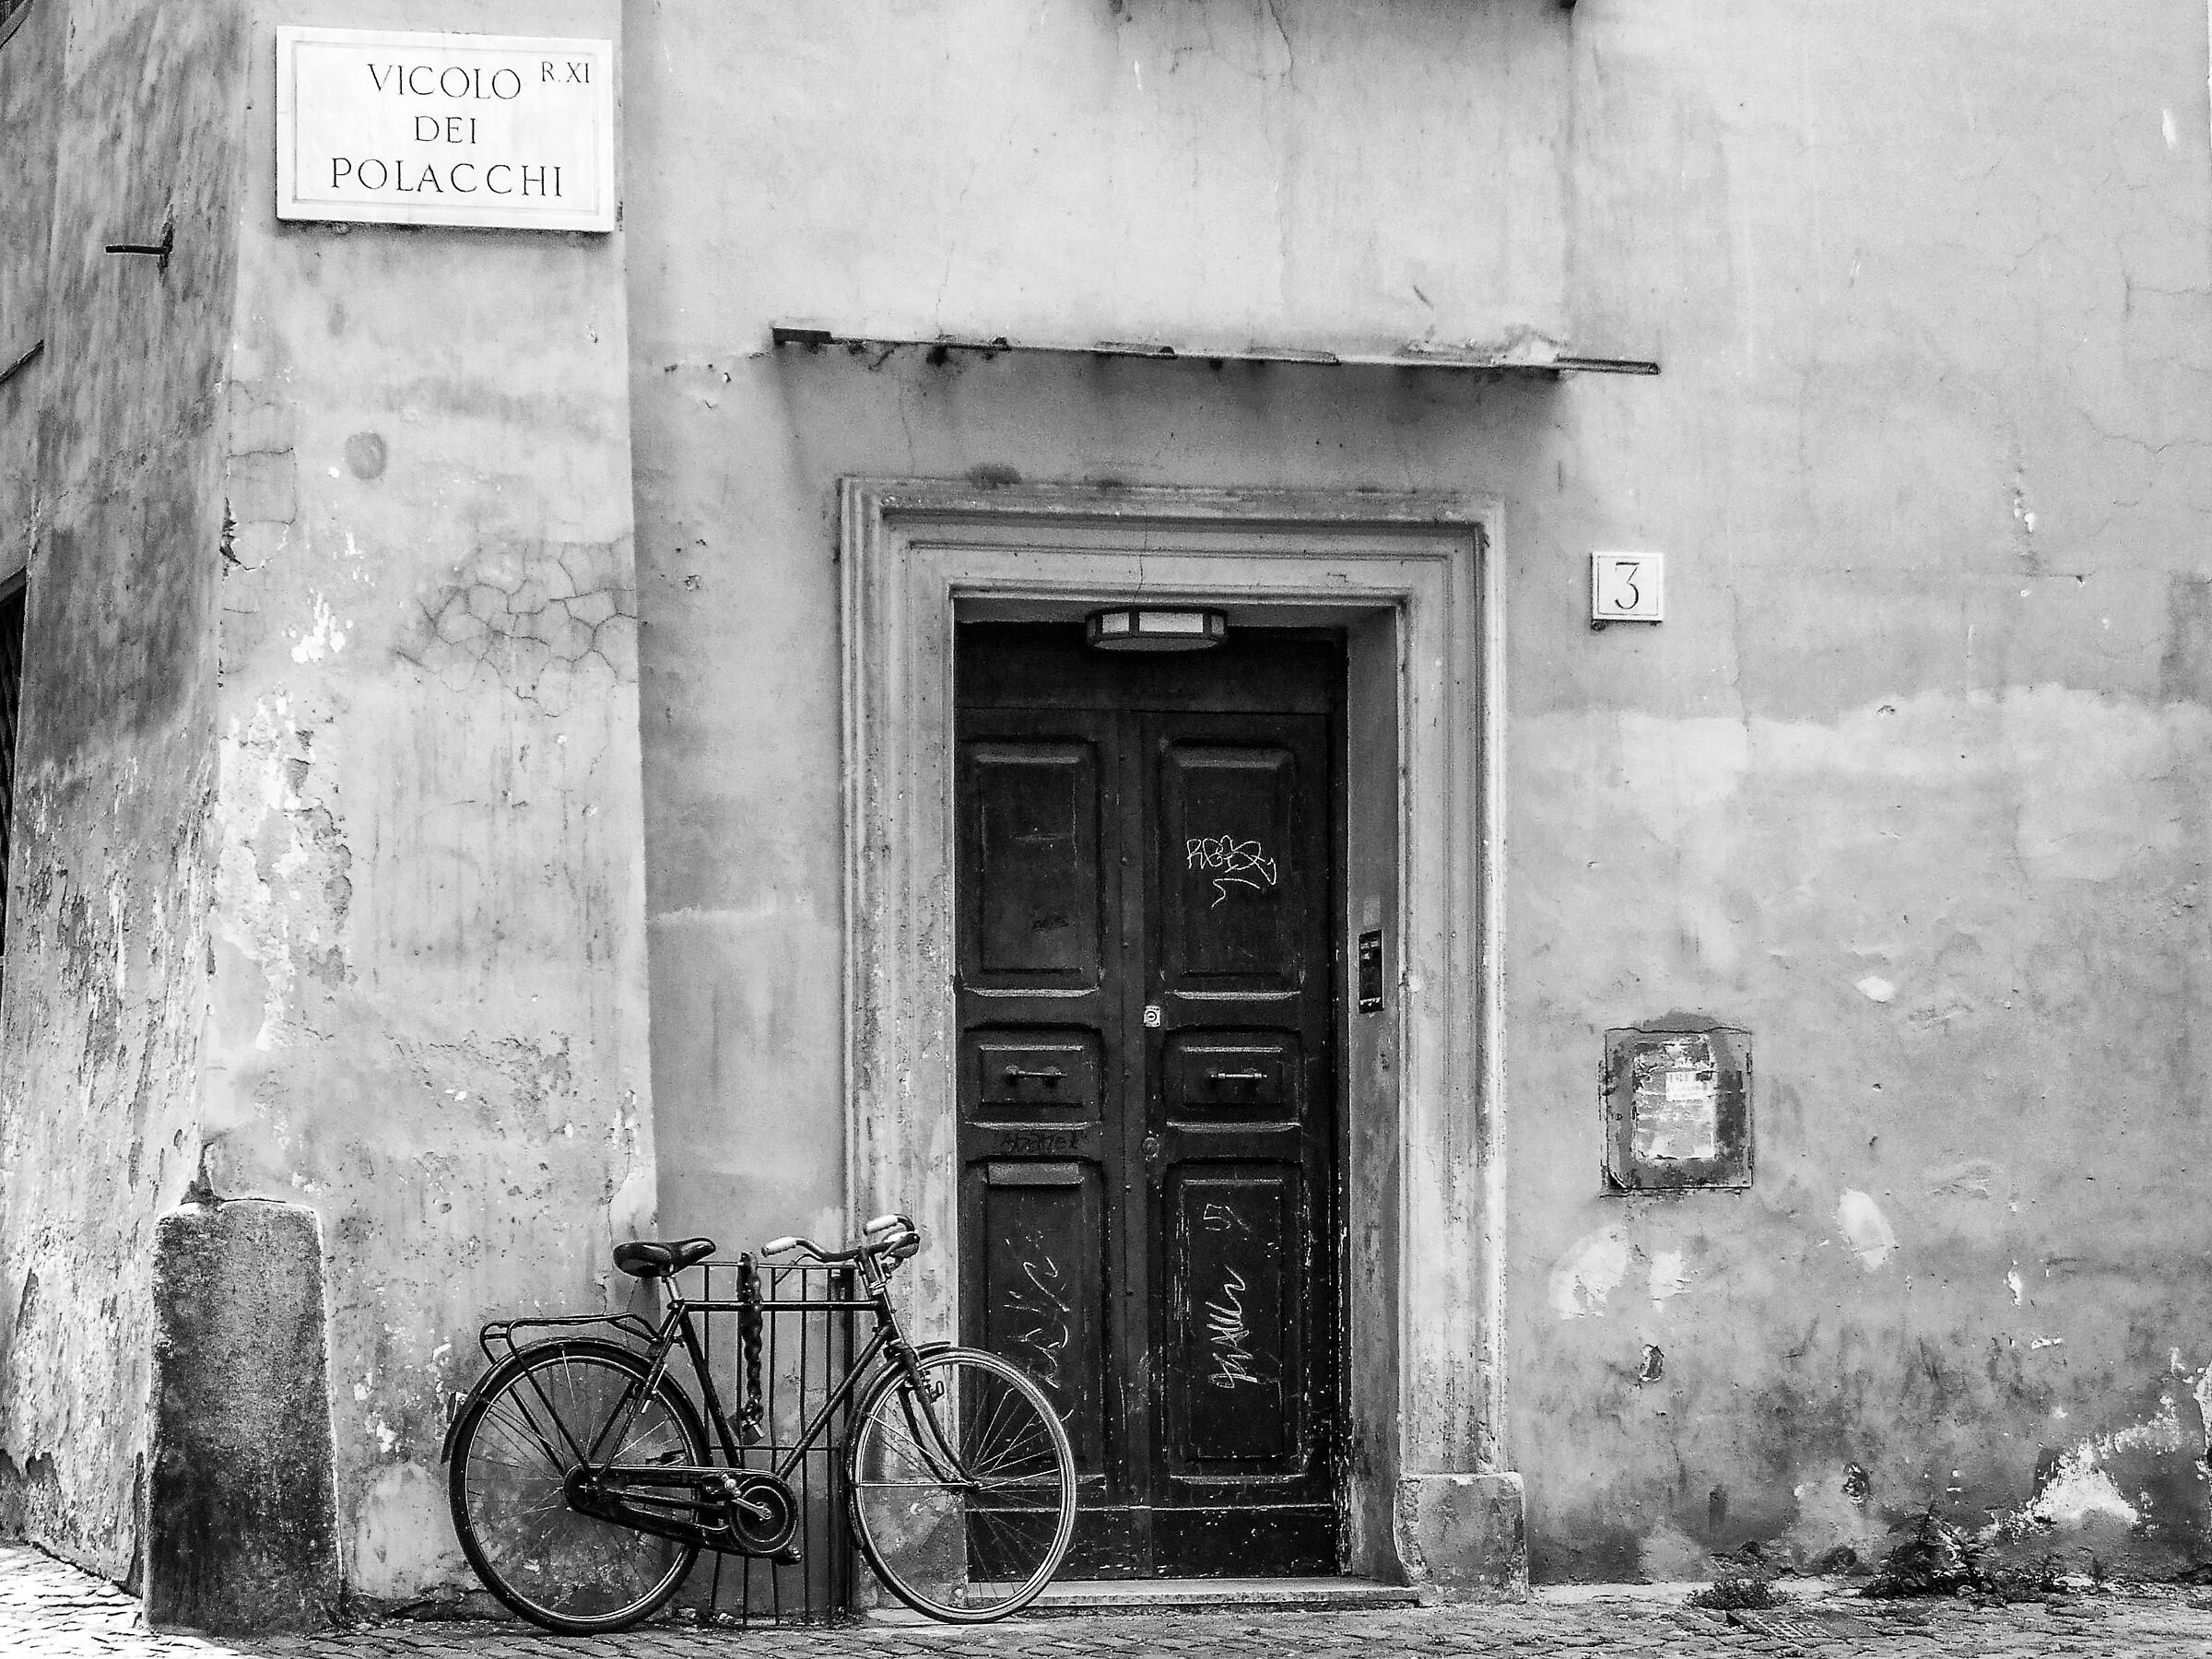 The bicycle in Vicolo dei Polacchi...